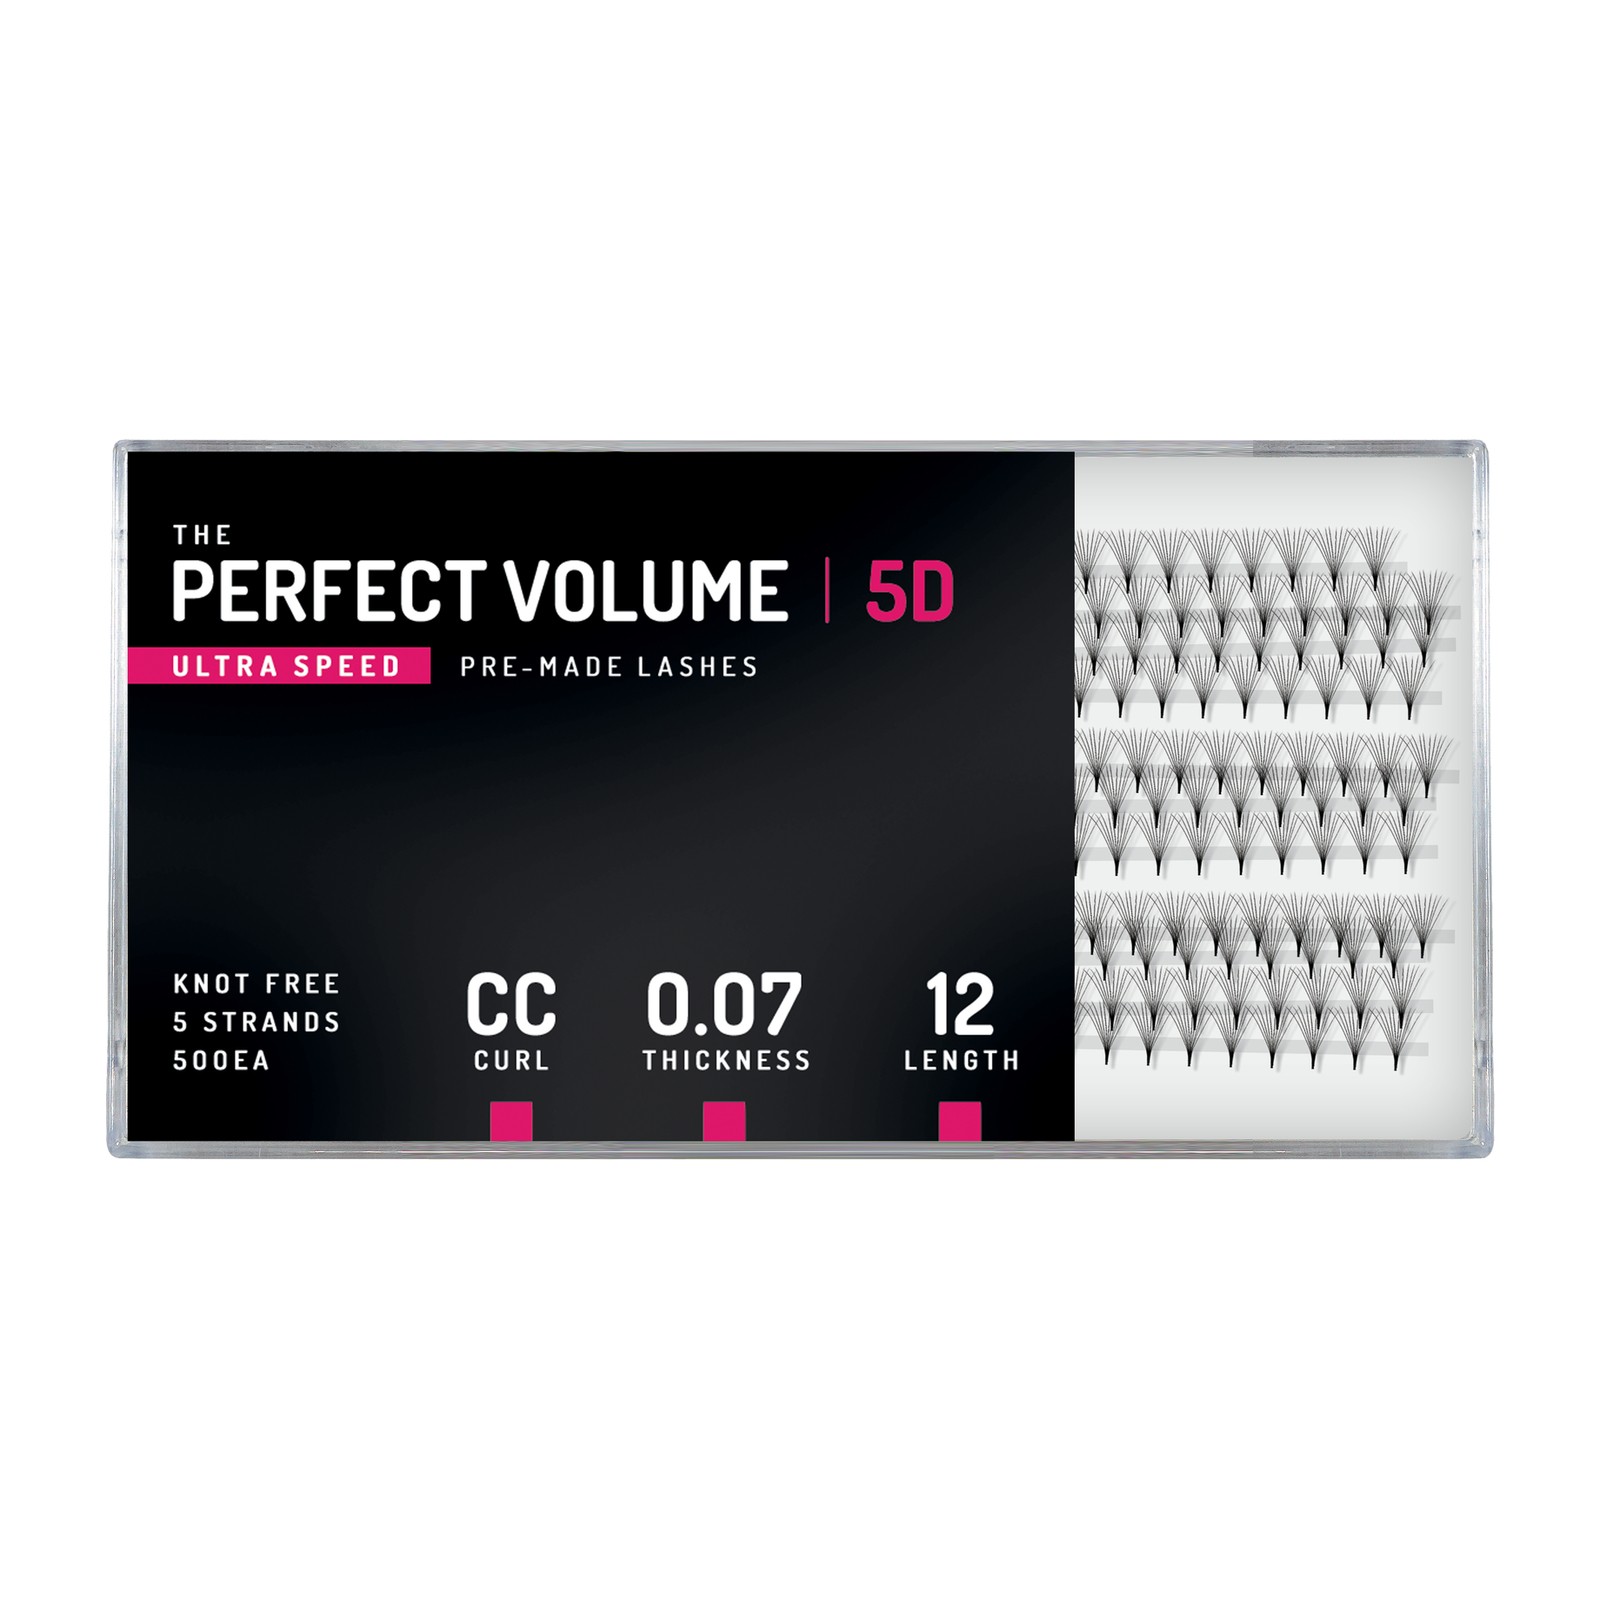 Volume Parfait Ultra Vitesse -  500 buchețele préfabriquées 5D -  12 mm, CC, 0,07 mm